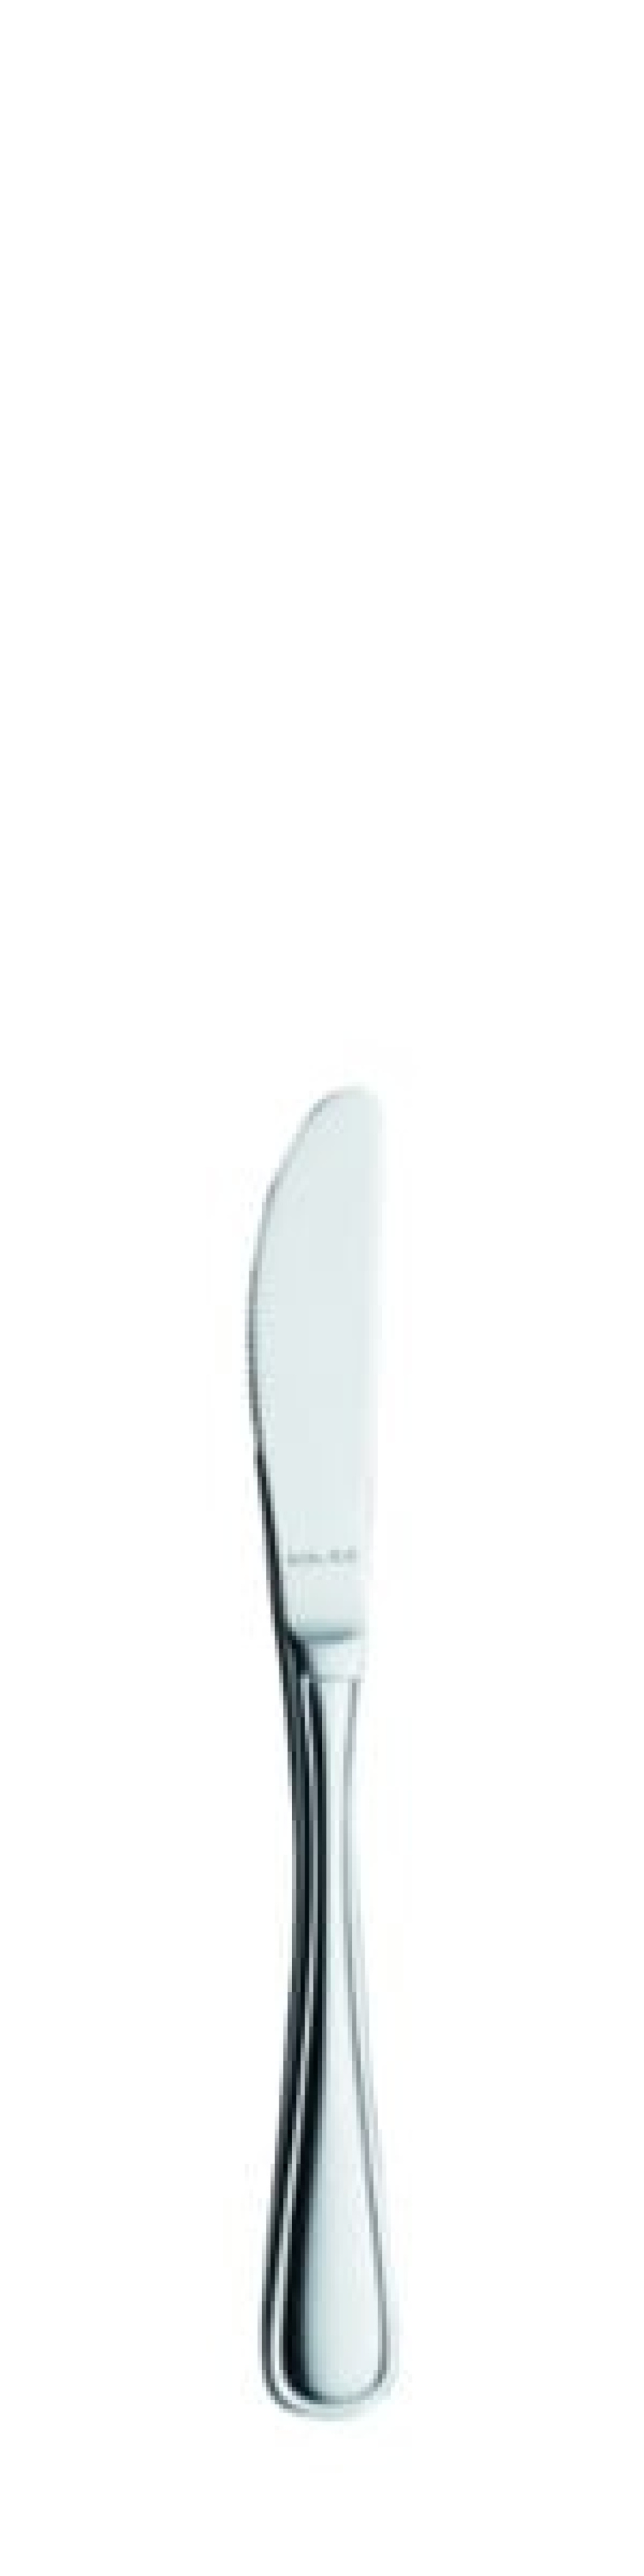 Selina Smørkniv 170 mm - Solex i gruppen Borddekking / Bestikk / Smørkniver hos The Kitchen Lab (1284-21524)